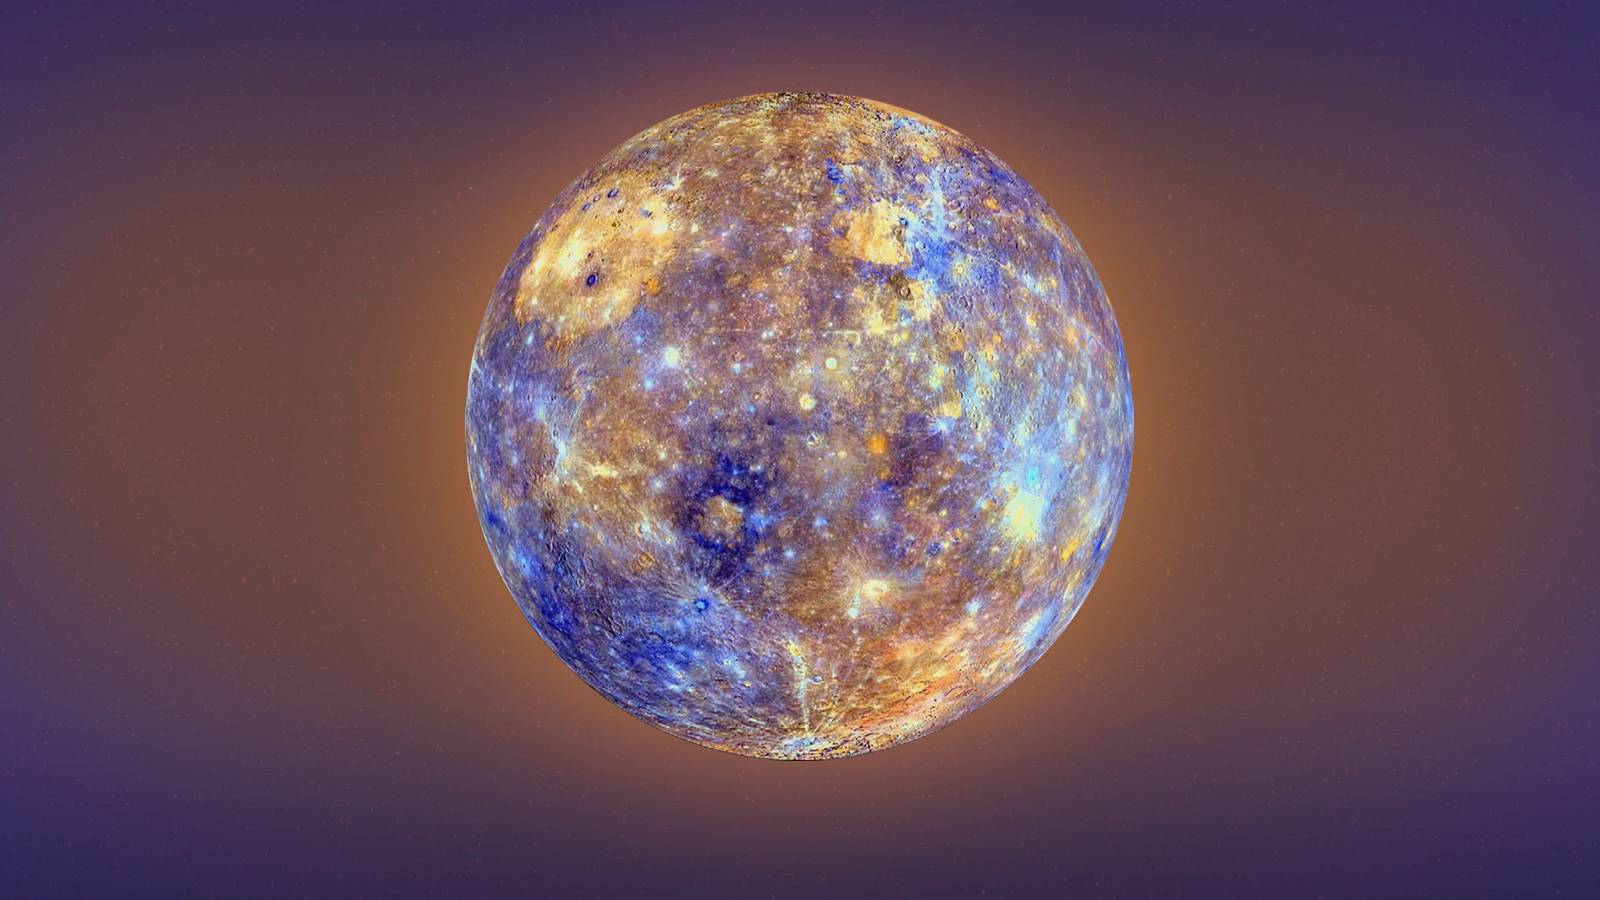 The unique Mercury planet